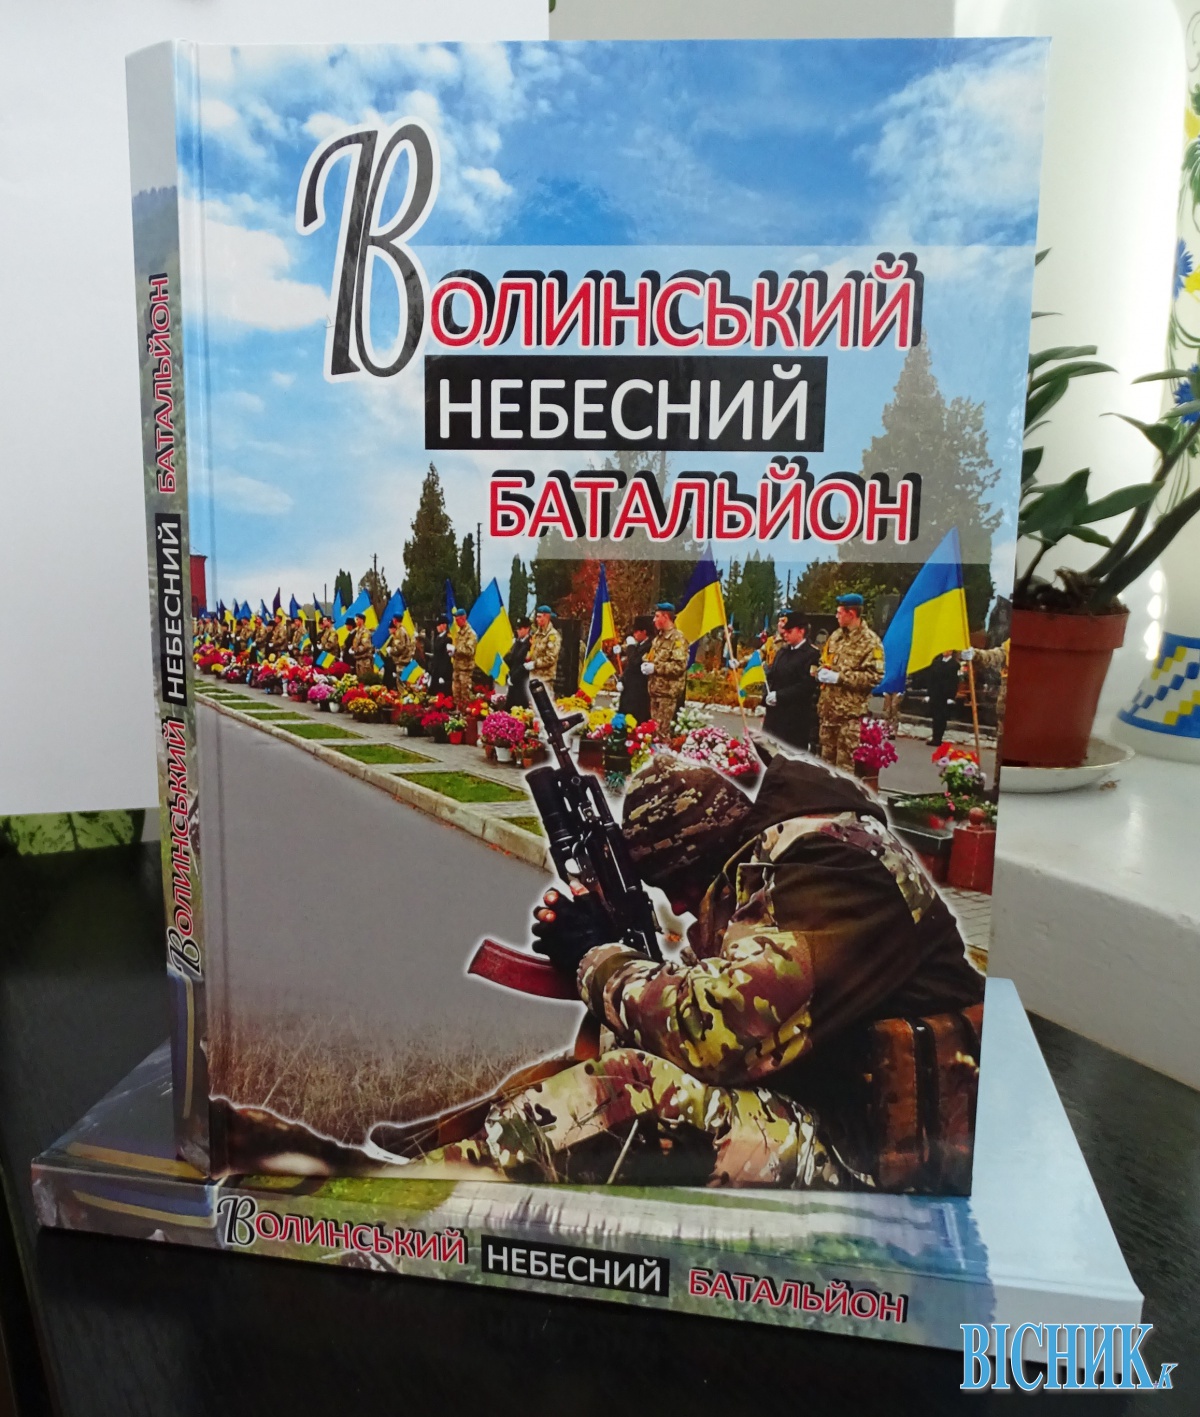 Книга «Волинський небесний батальйон» – наша молитва за загиблими героями на Донбасі